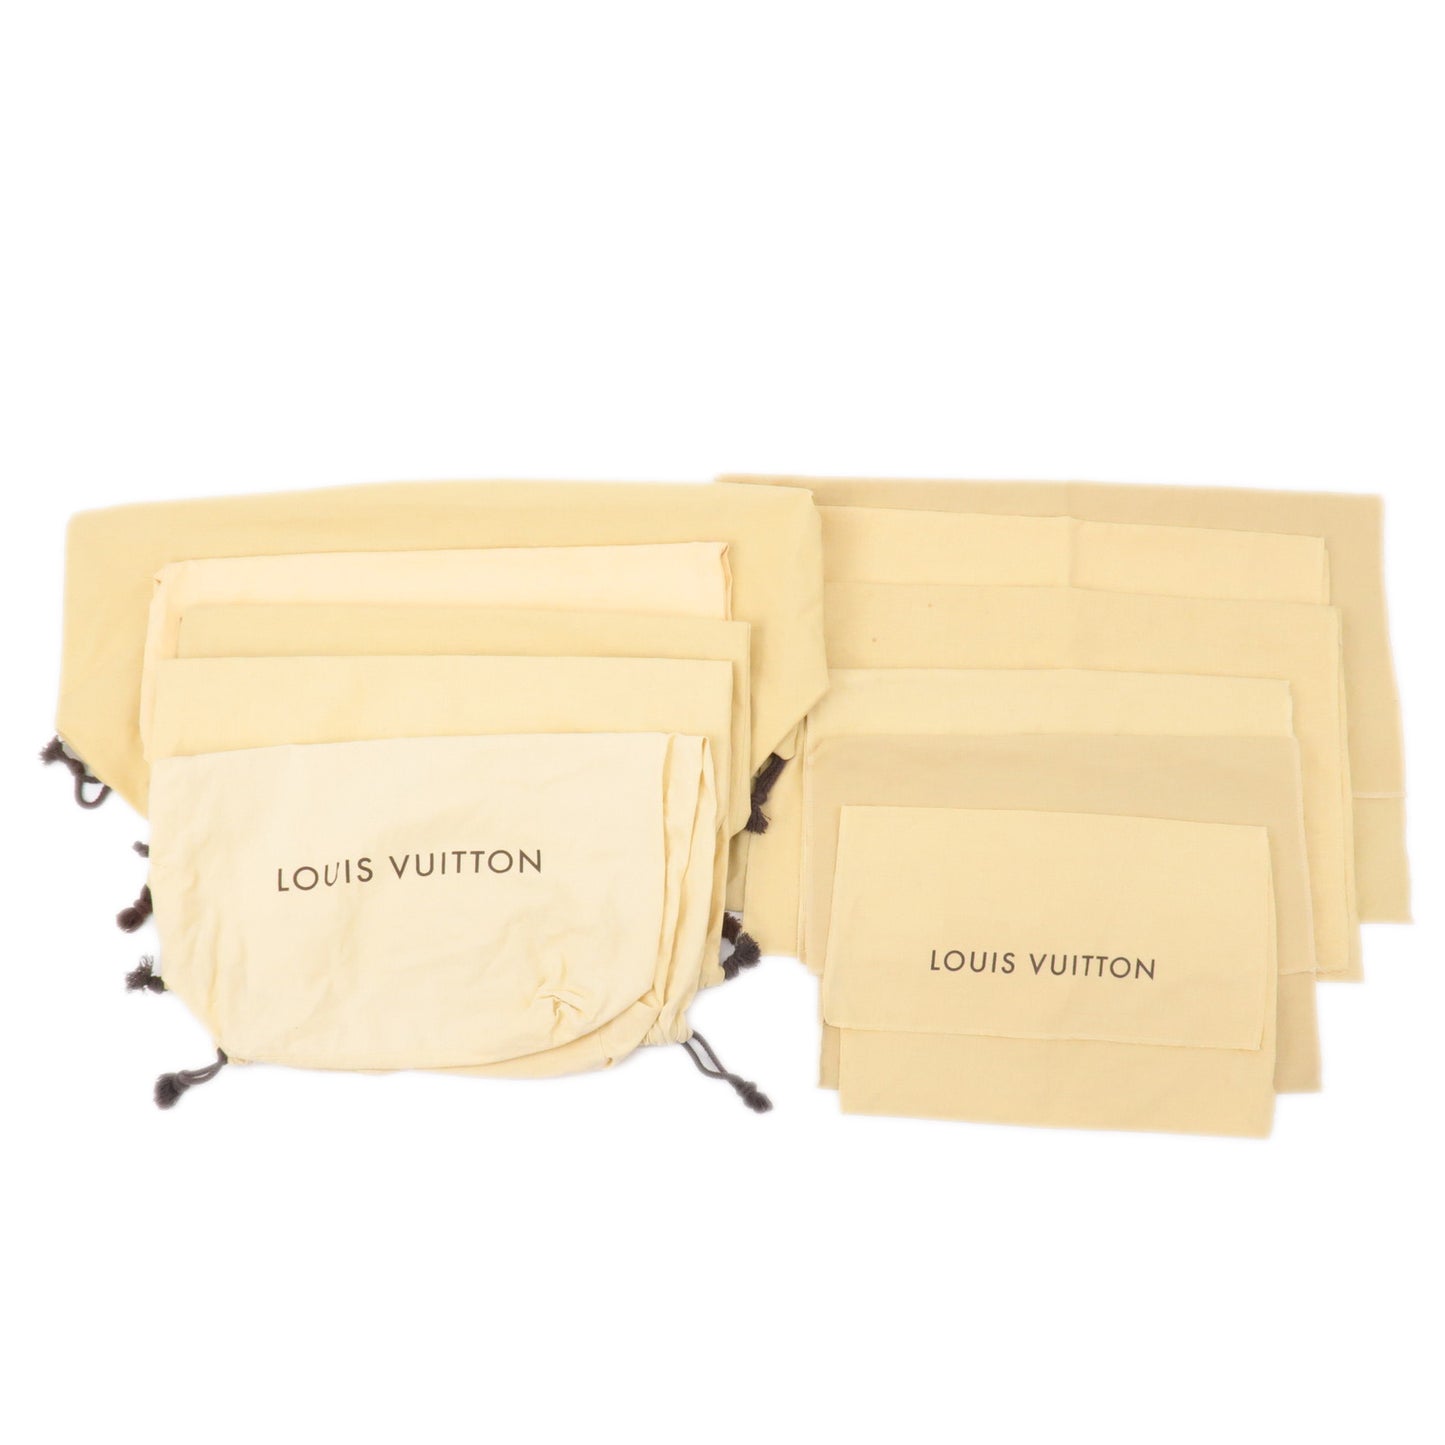 Louis Vuitton, Bags, Authentic Louis Vuitton Logo Set Dust Bag Drawstring  Canvas Cotton Brown